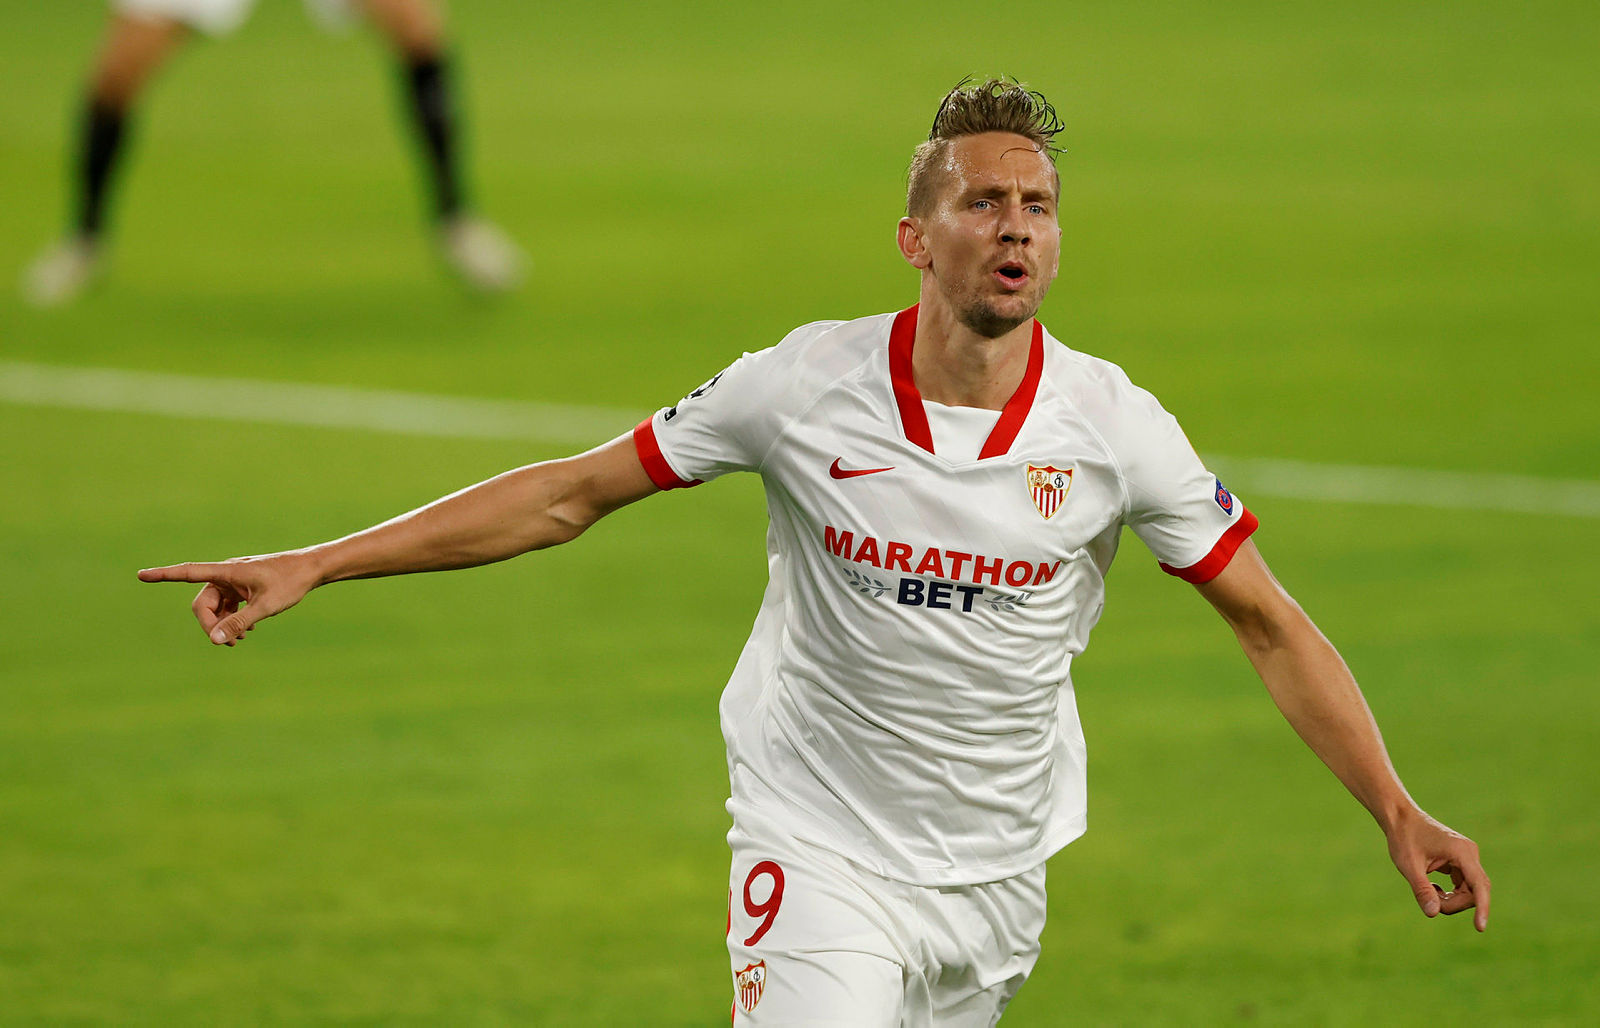 Son dakika spor haberi: Sevilla yüksekten uçtu! Beşiktaş’ın Luuk de Jong transferi çıkmaza girdi